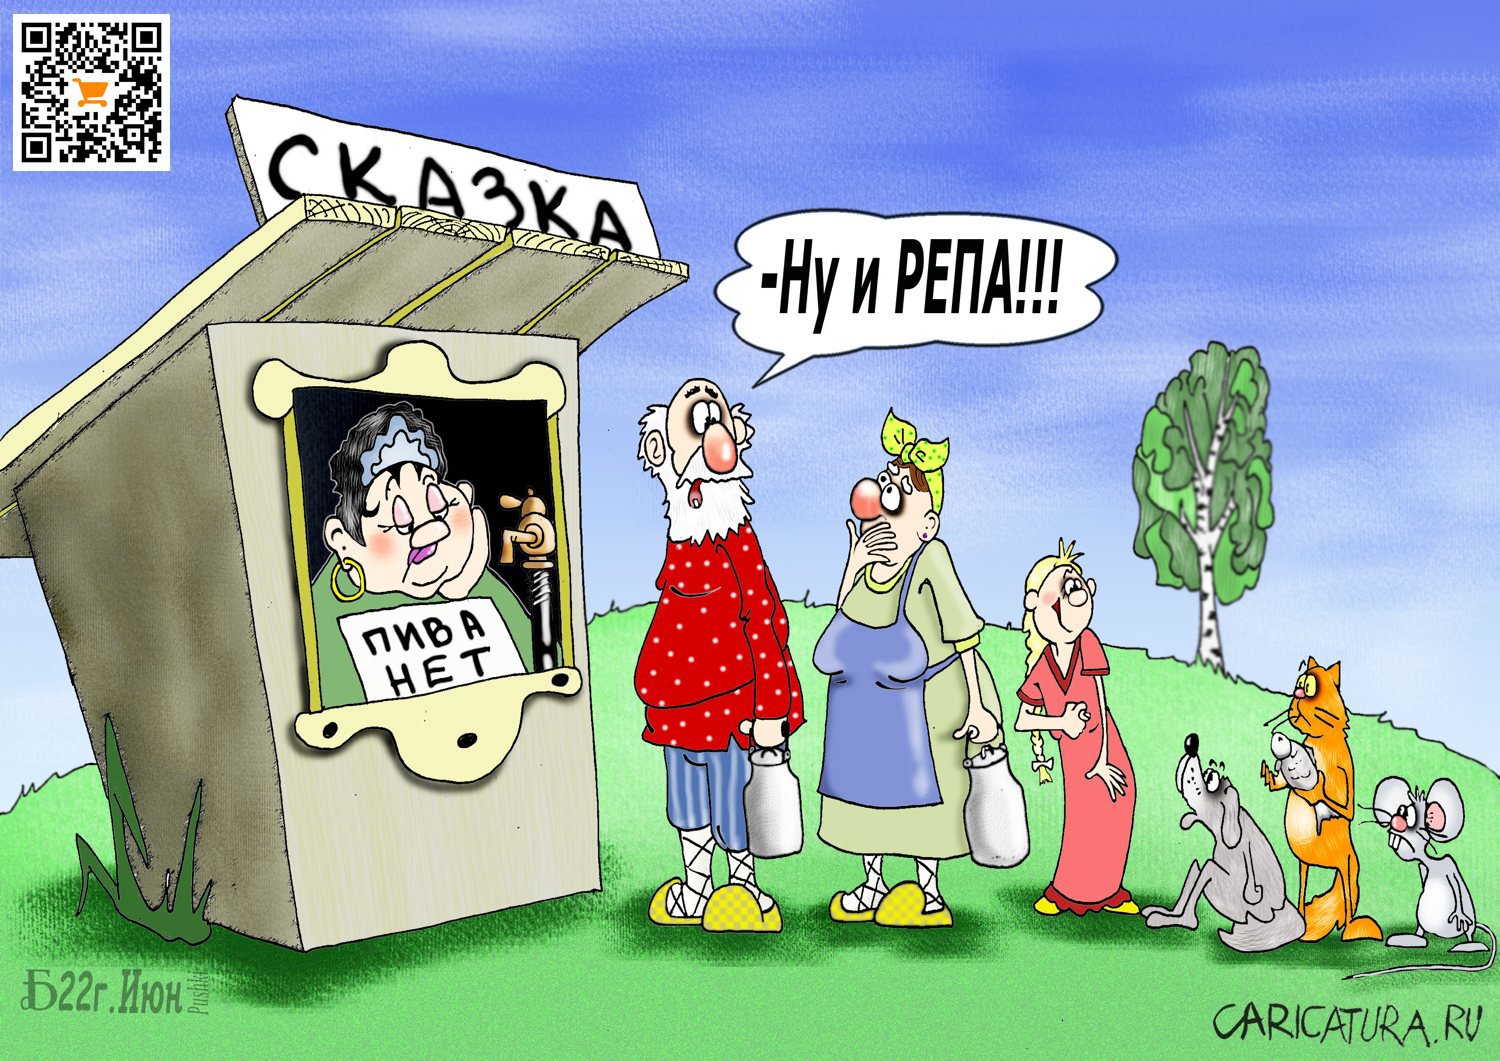 Карикатура "Про сказочных персонажей", Борис Демин